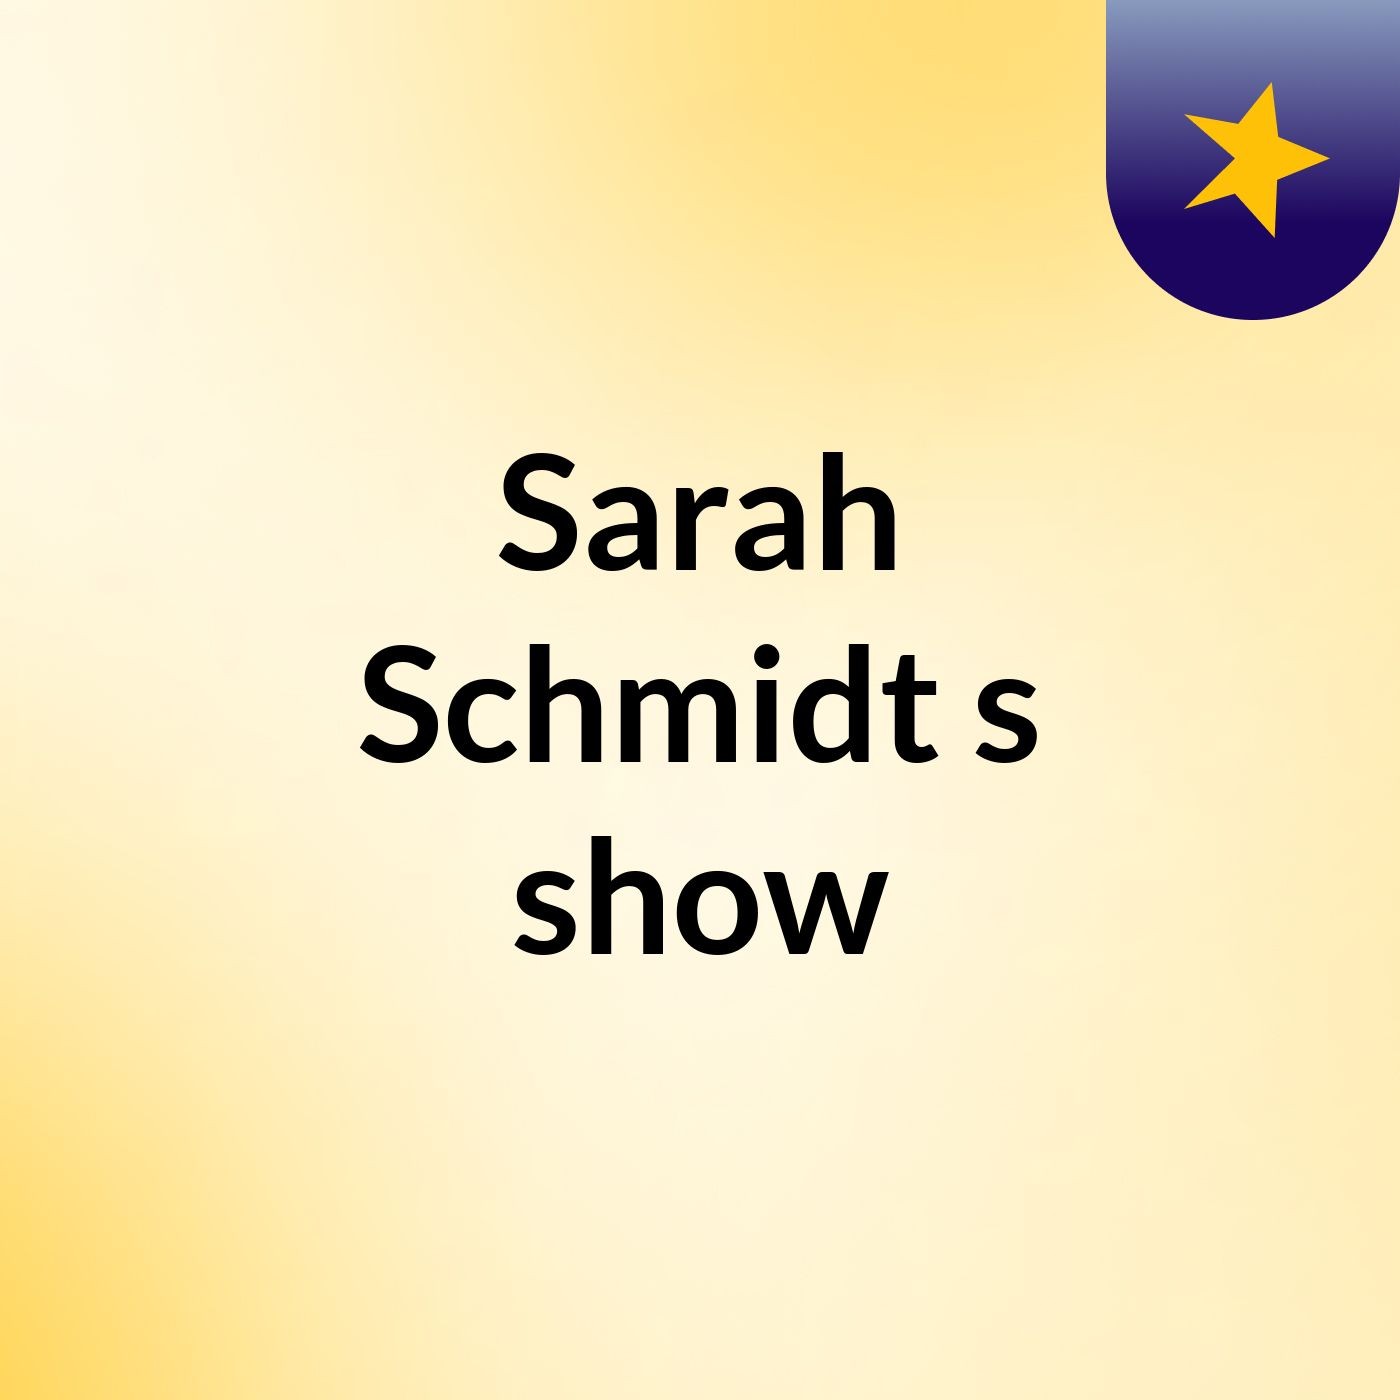 Sarah Schmidt's show